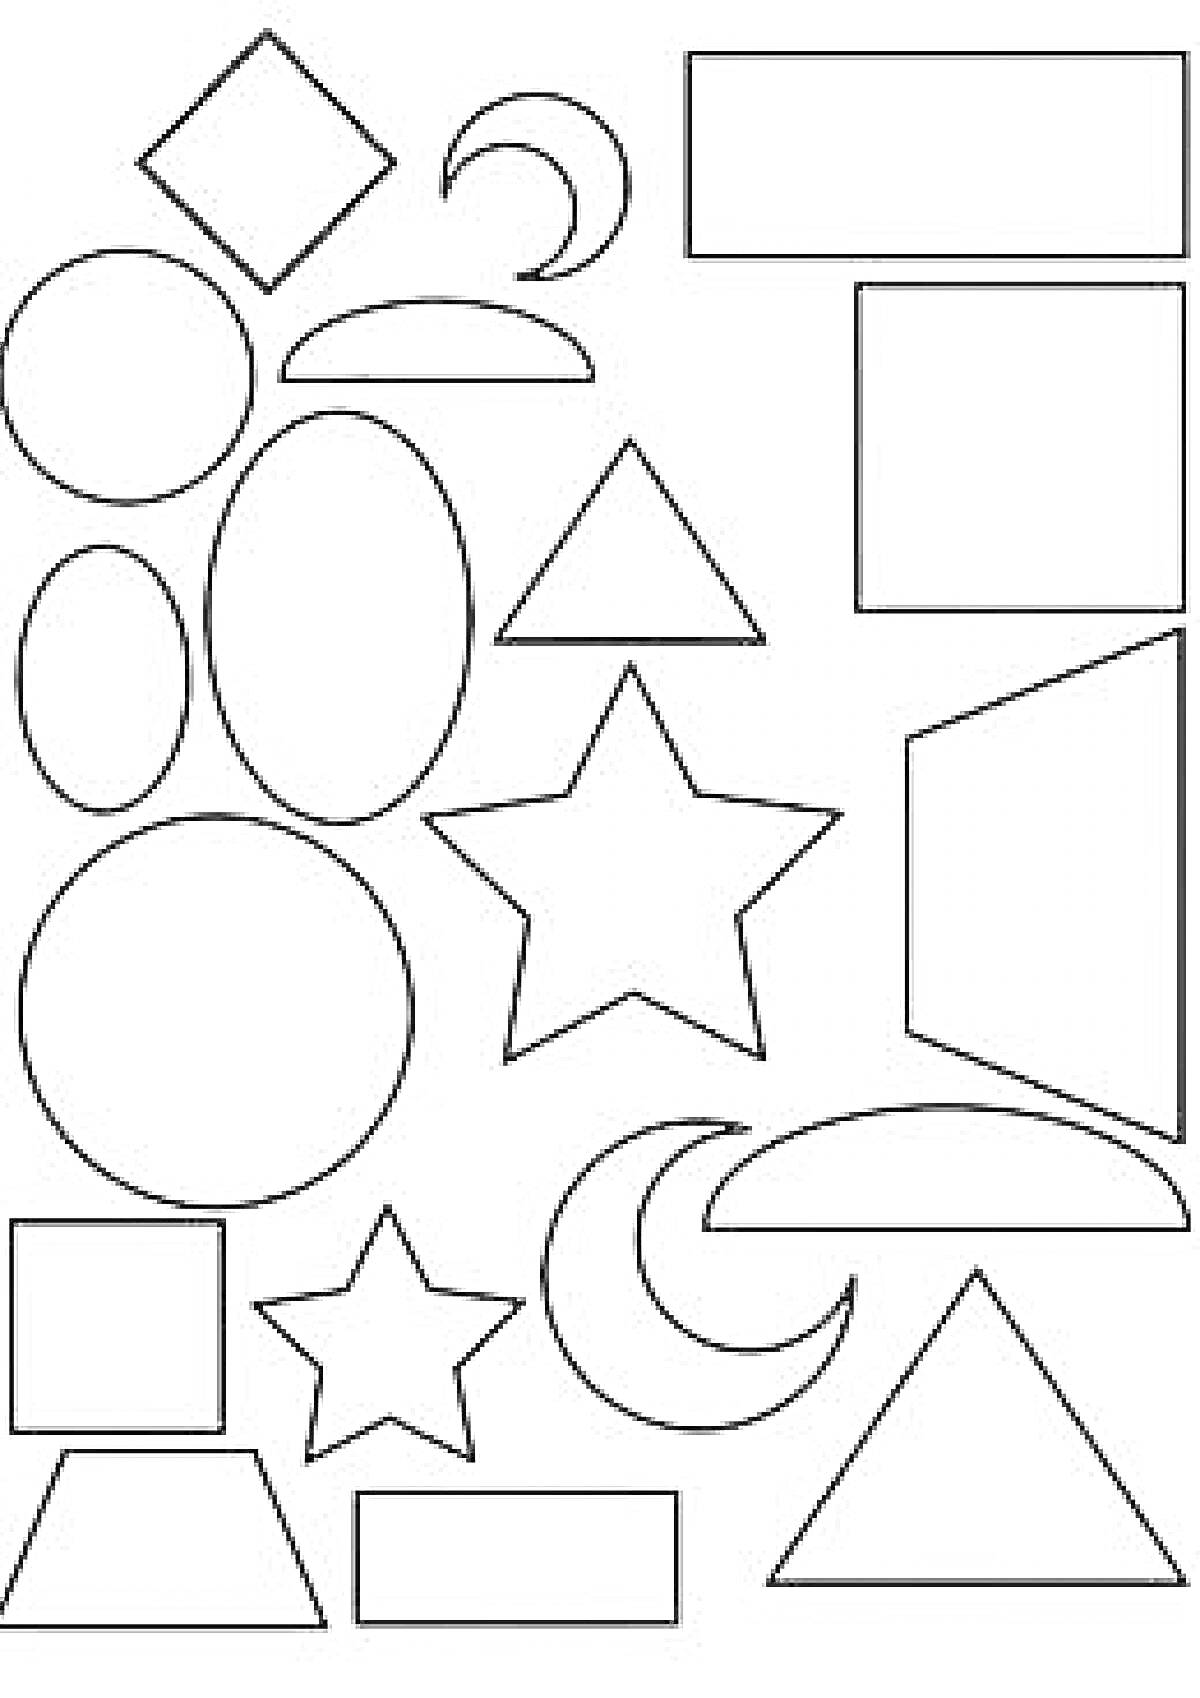 Раскраска Геометрические фигуры: квадраты, круги, овалы, прямоугольники, треугольники, пятиконечные звезды, полумесяцы, трапеция, ромб, параллелограмм